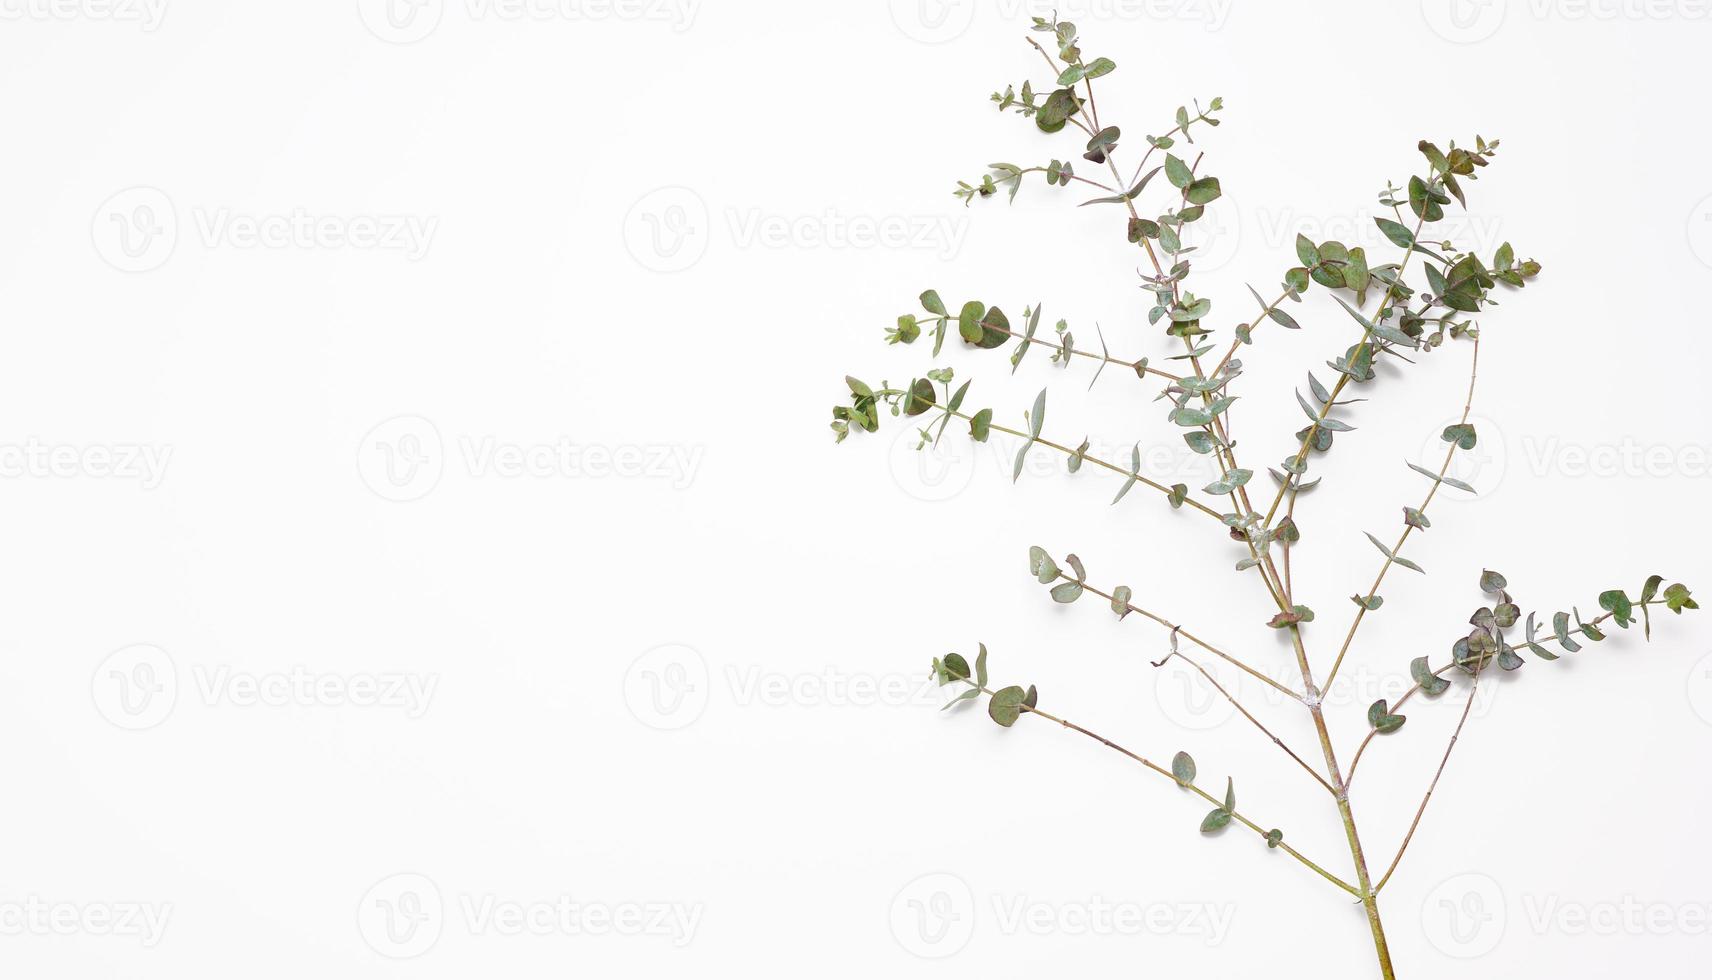 rama de eucalipto fresco con hojas verdes sobre un fondo blanco. vista desde arriba foto